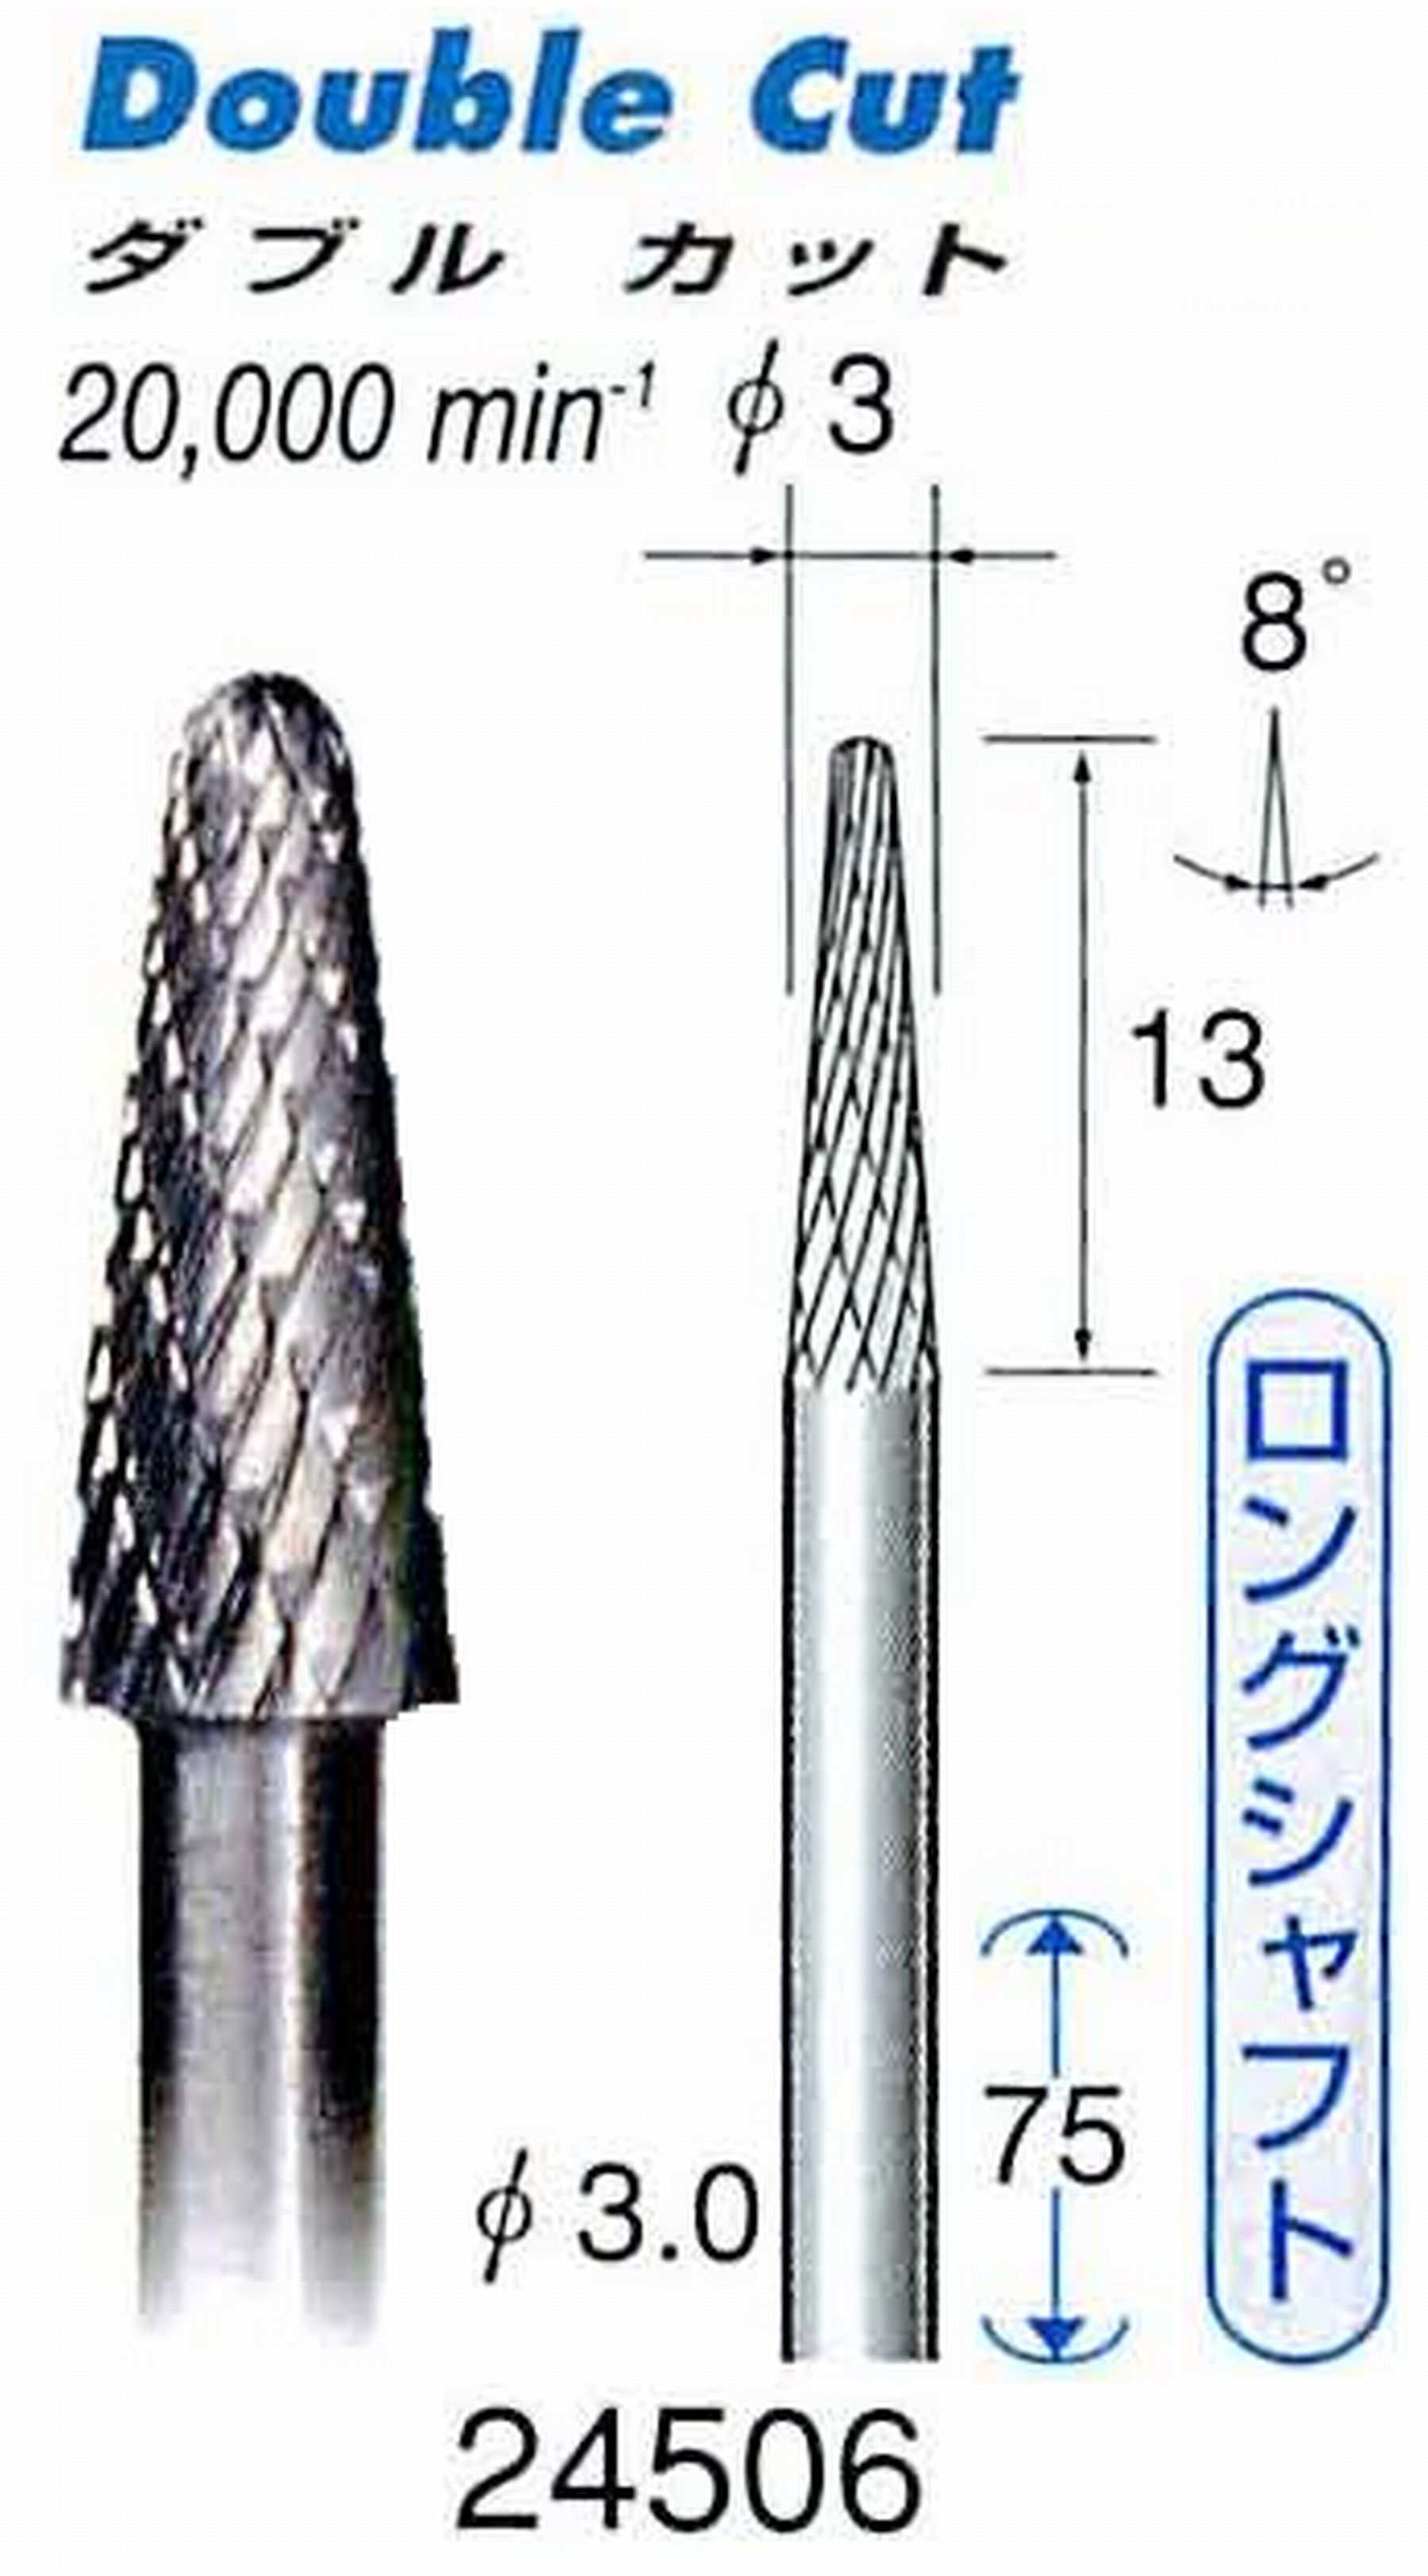 ナカニシ/NAKANISHI 超硬カッター(ロングシャフト) 軸径(シャンク)φ3.0mm 24506